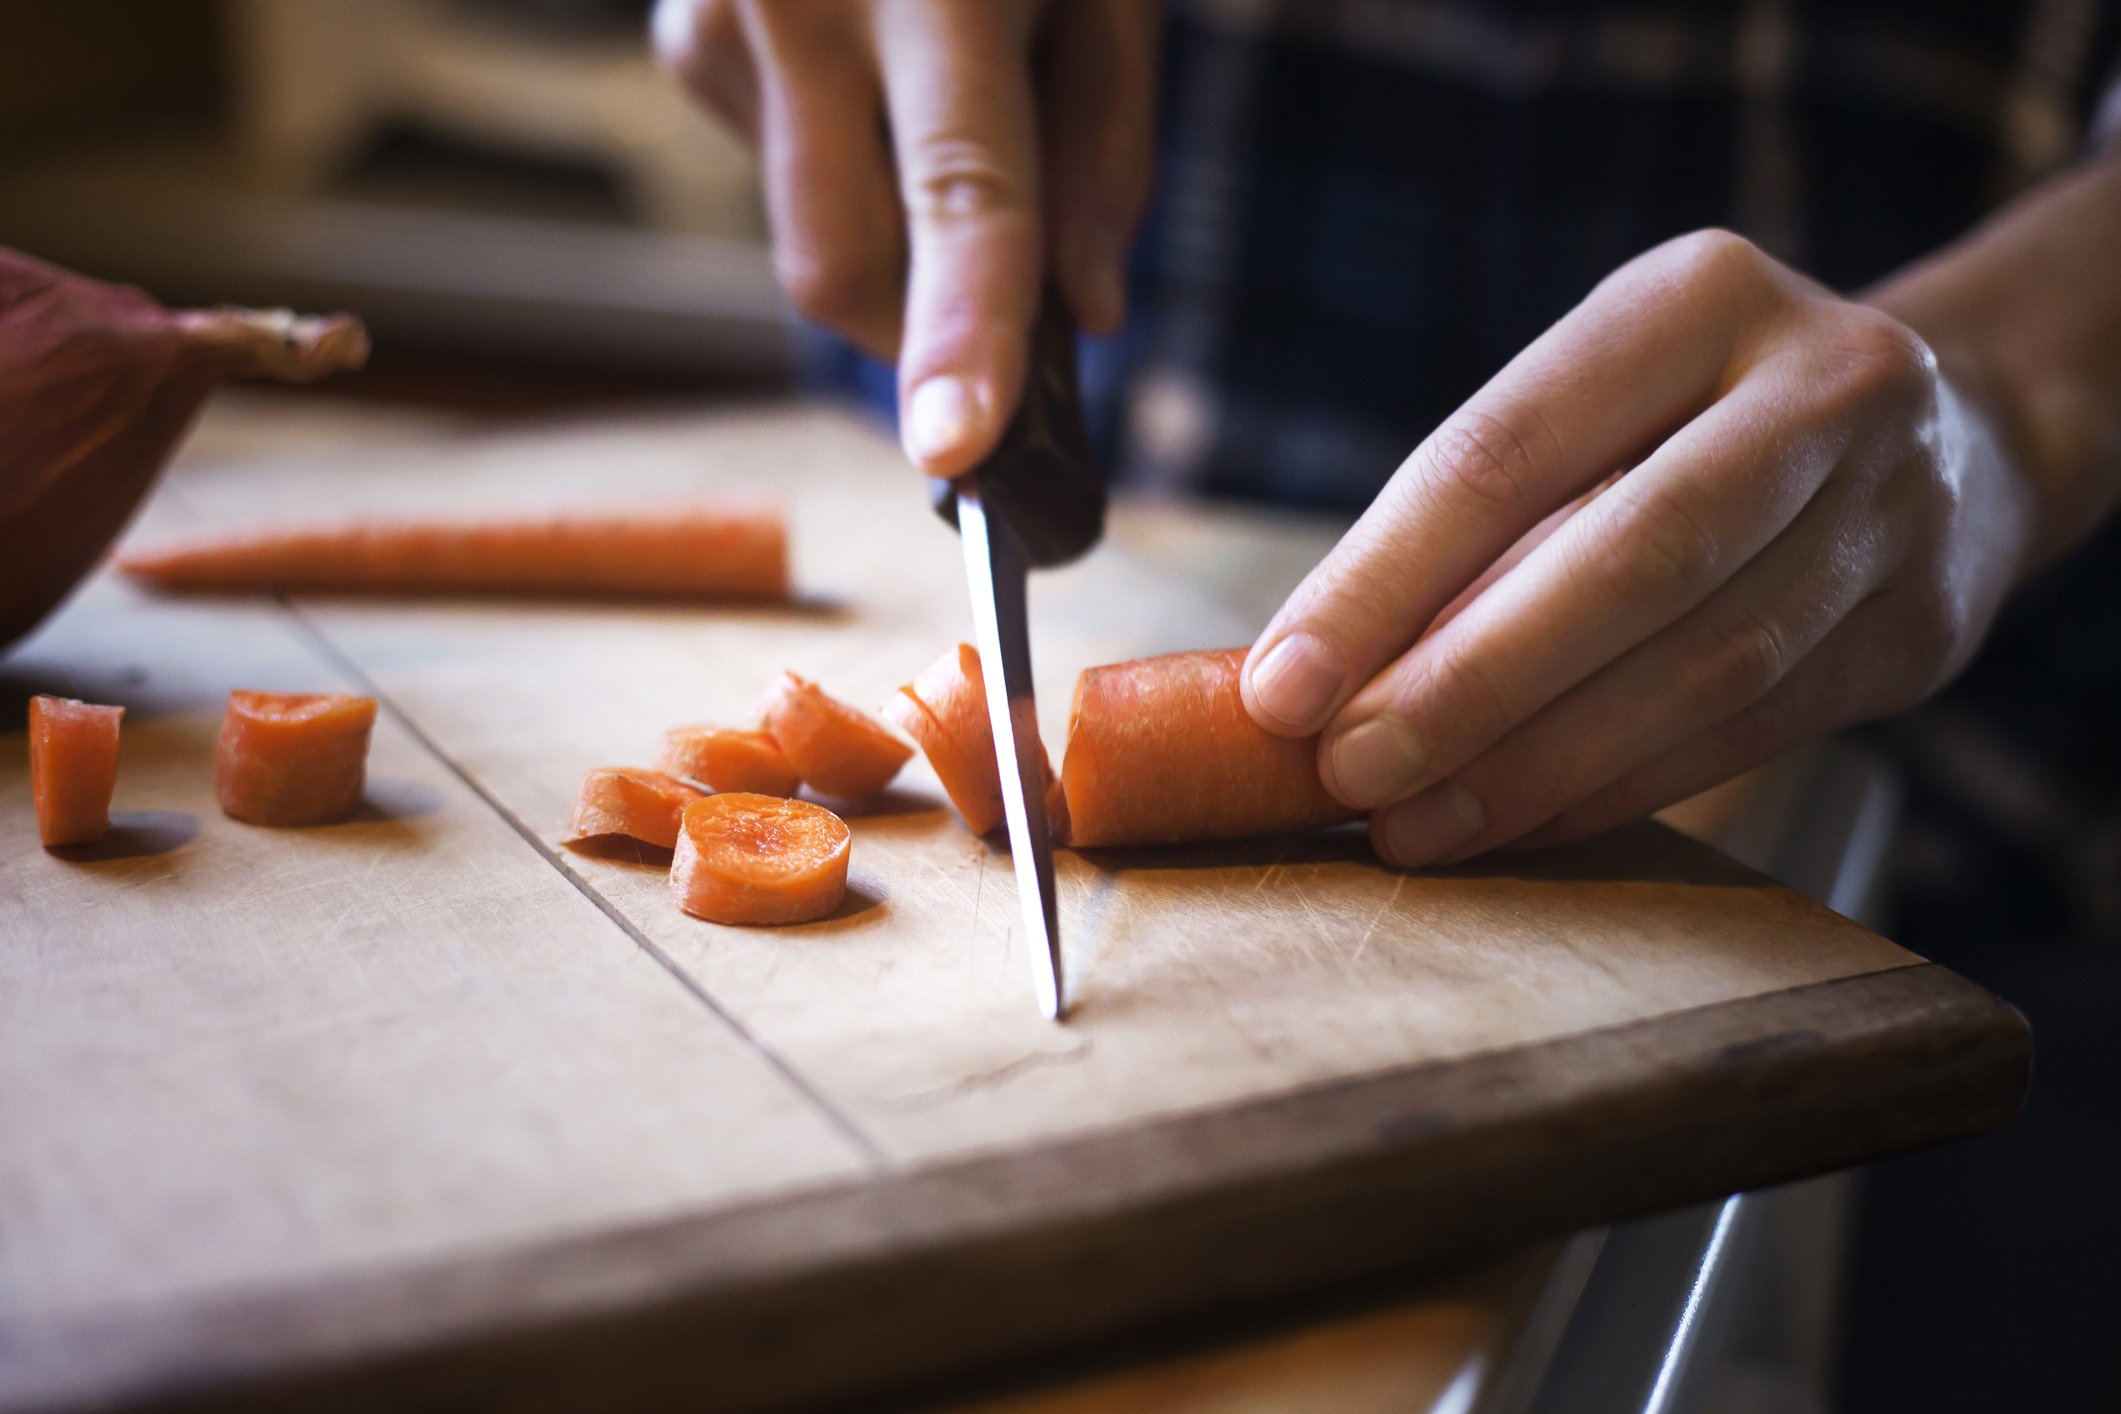 Des carottes hachées | source : Getty Images